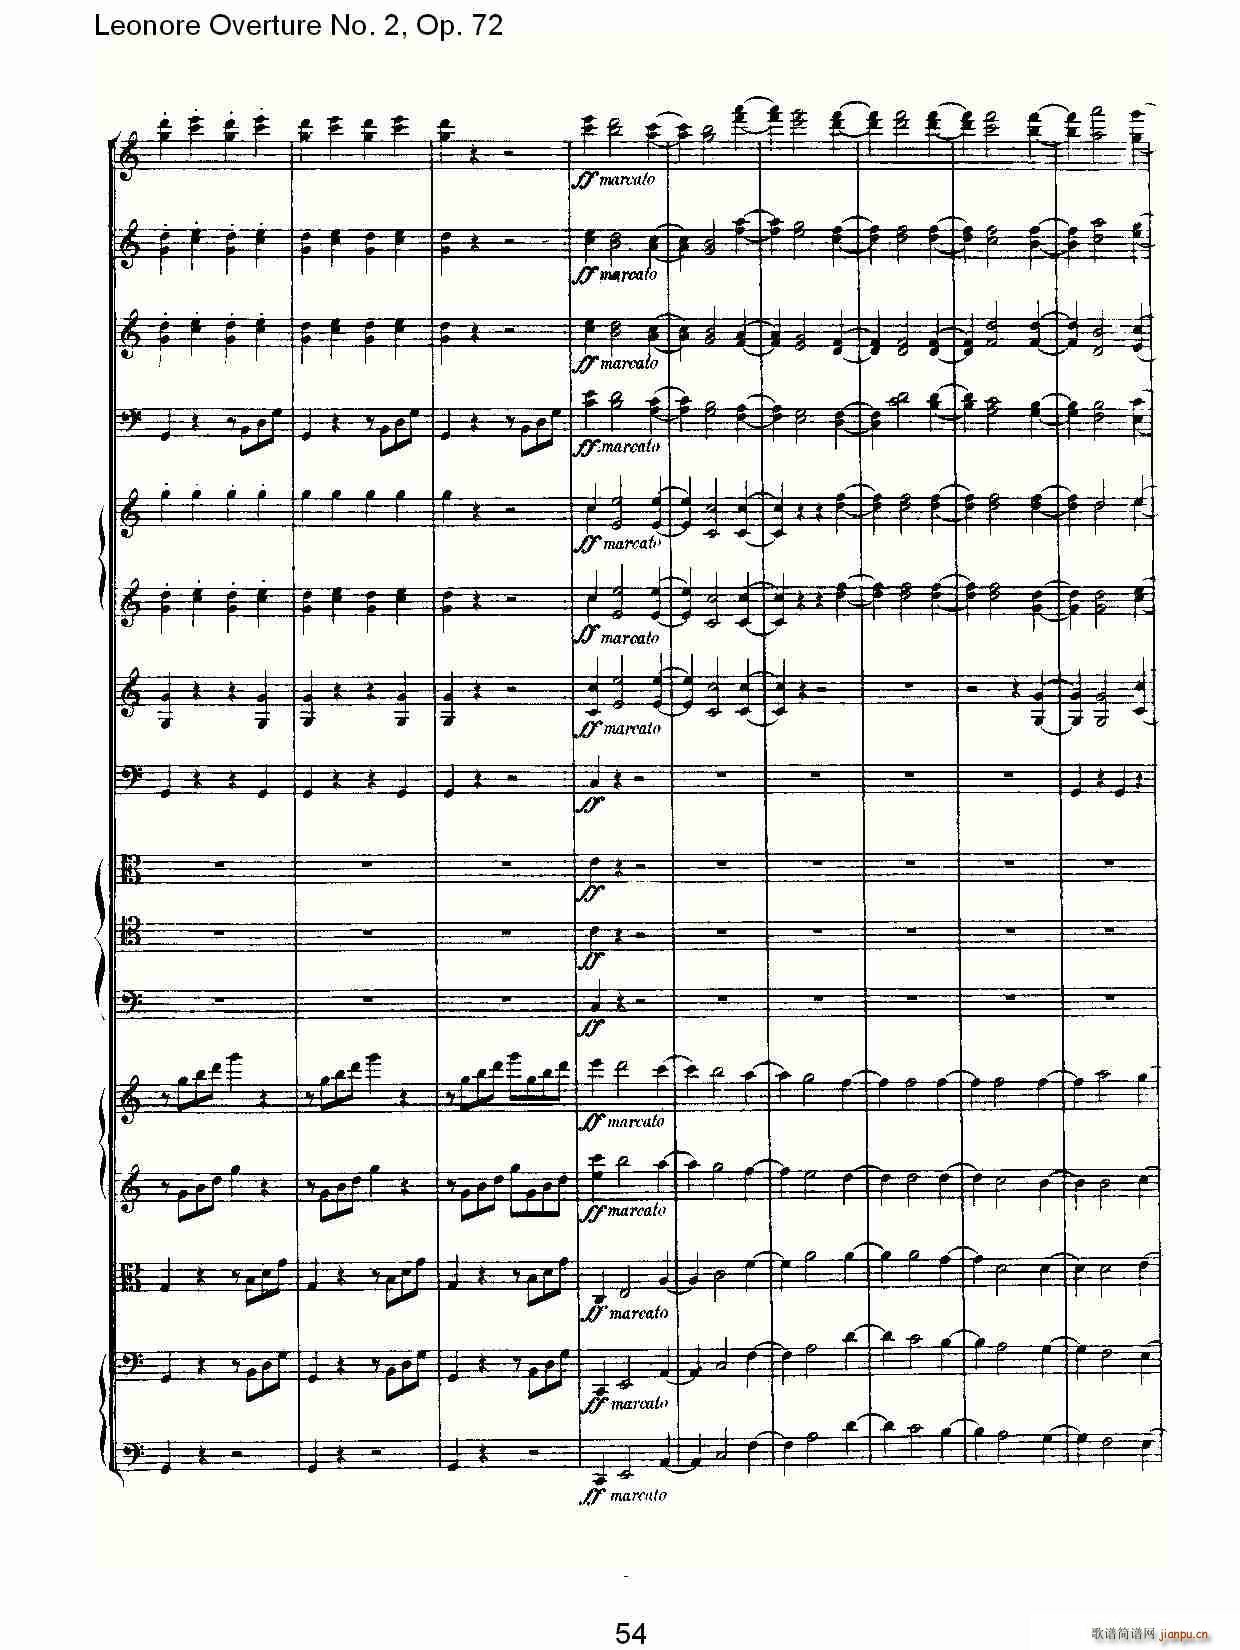 Leonore Overture No. 2Op. 72(ʮּ)14